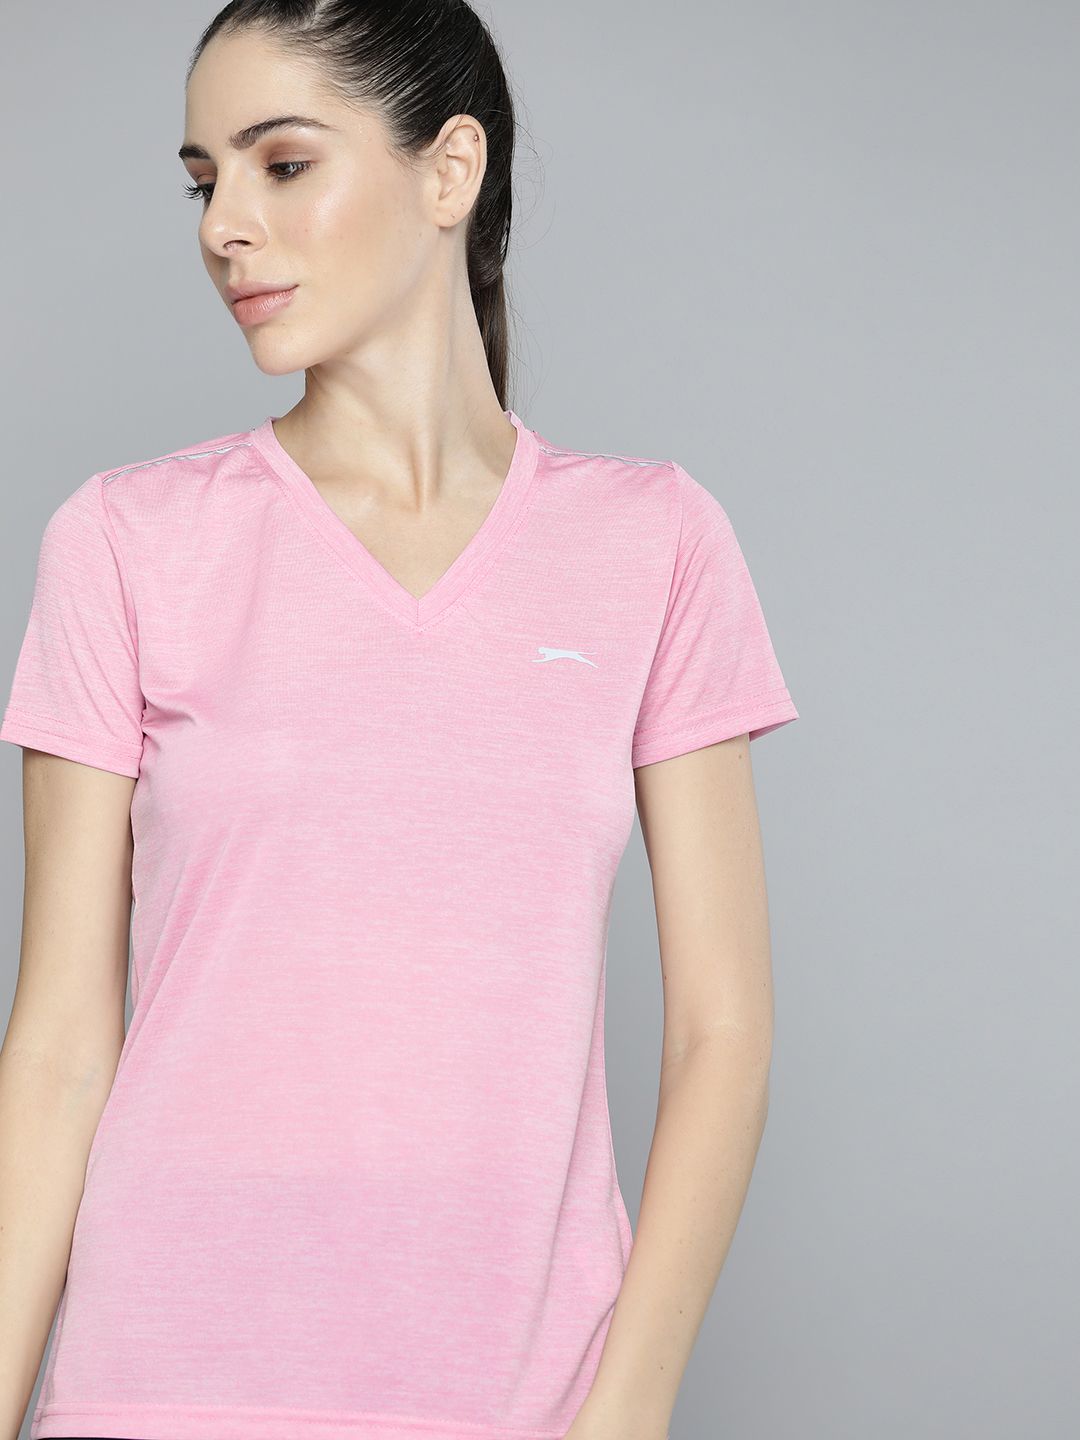 Slazenger Women Pink Slim Fit V-Neck T-shirt Price in India